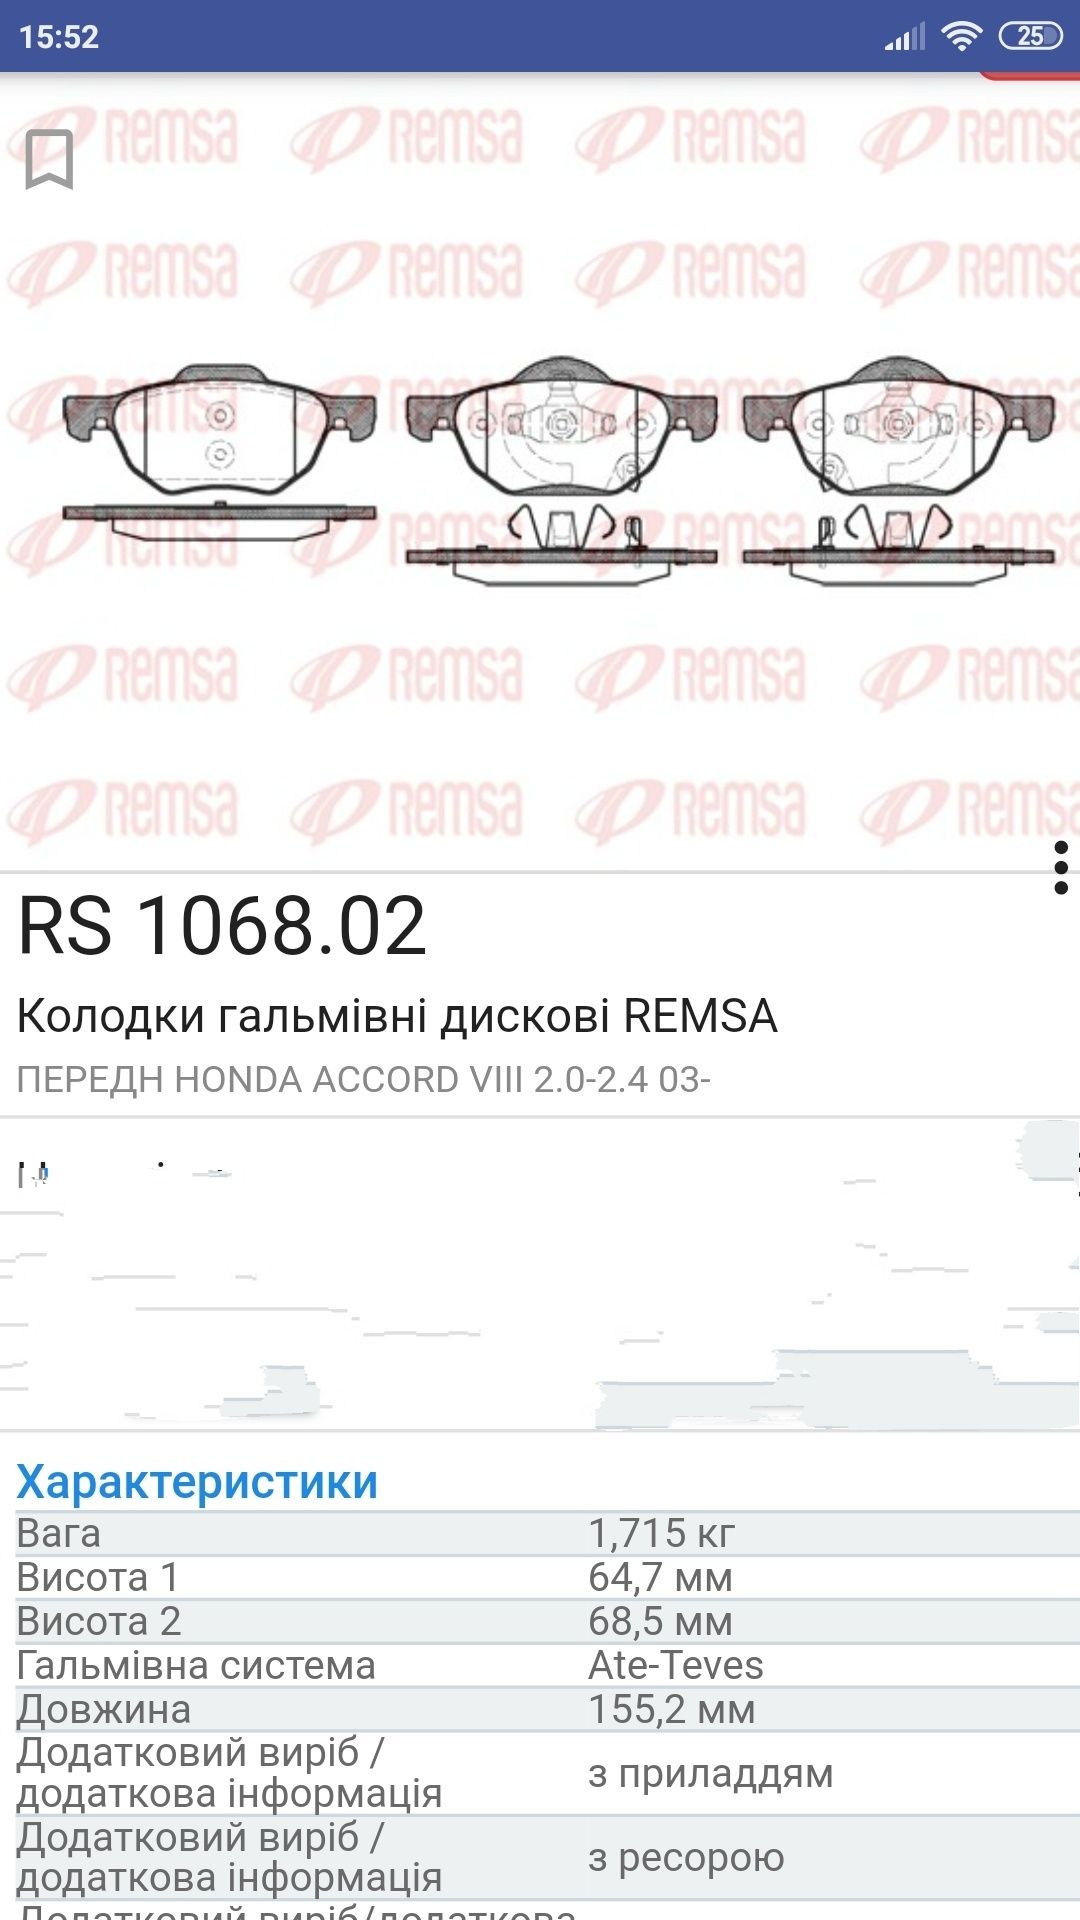 Продаю нові тормозні колодки Remsa для автомобіля Хонда Акорд